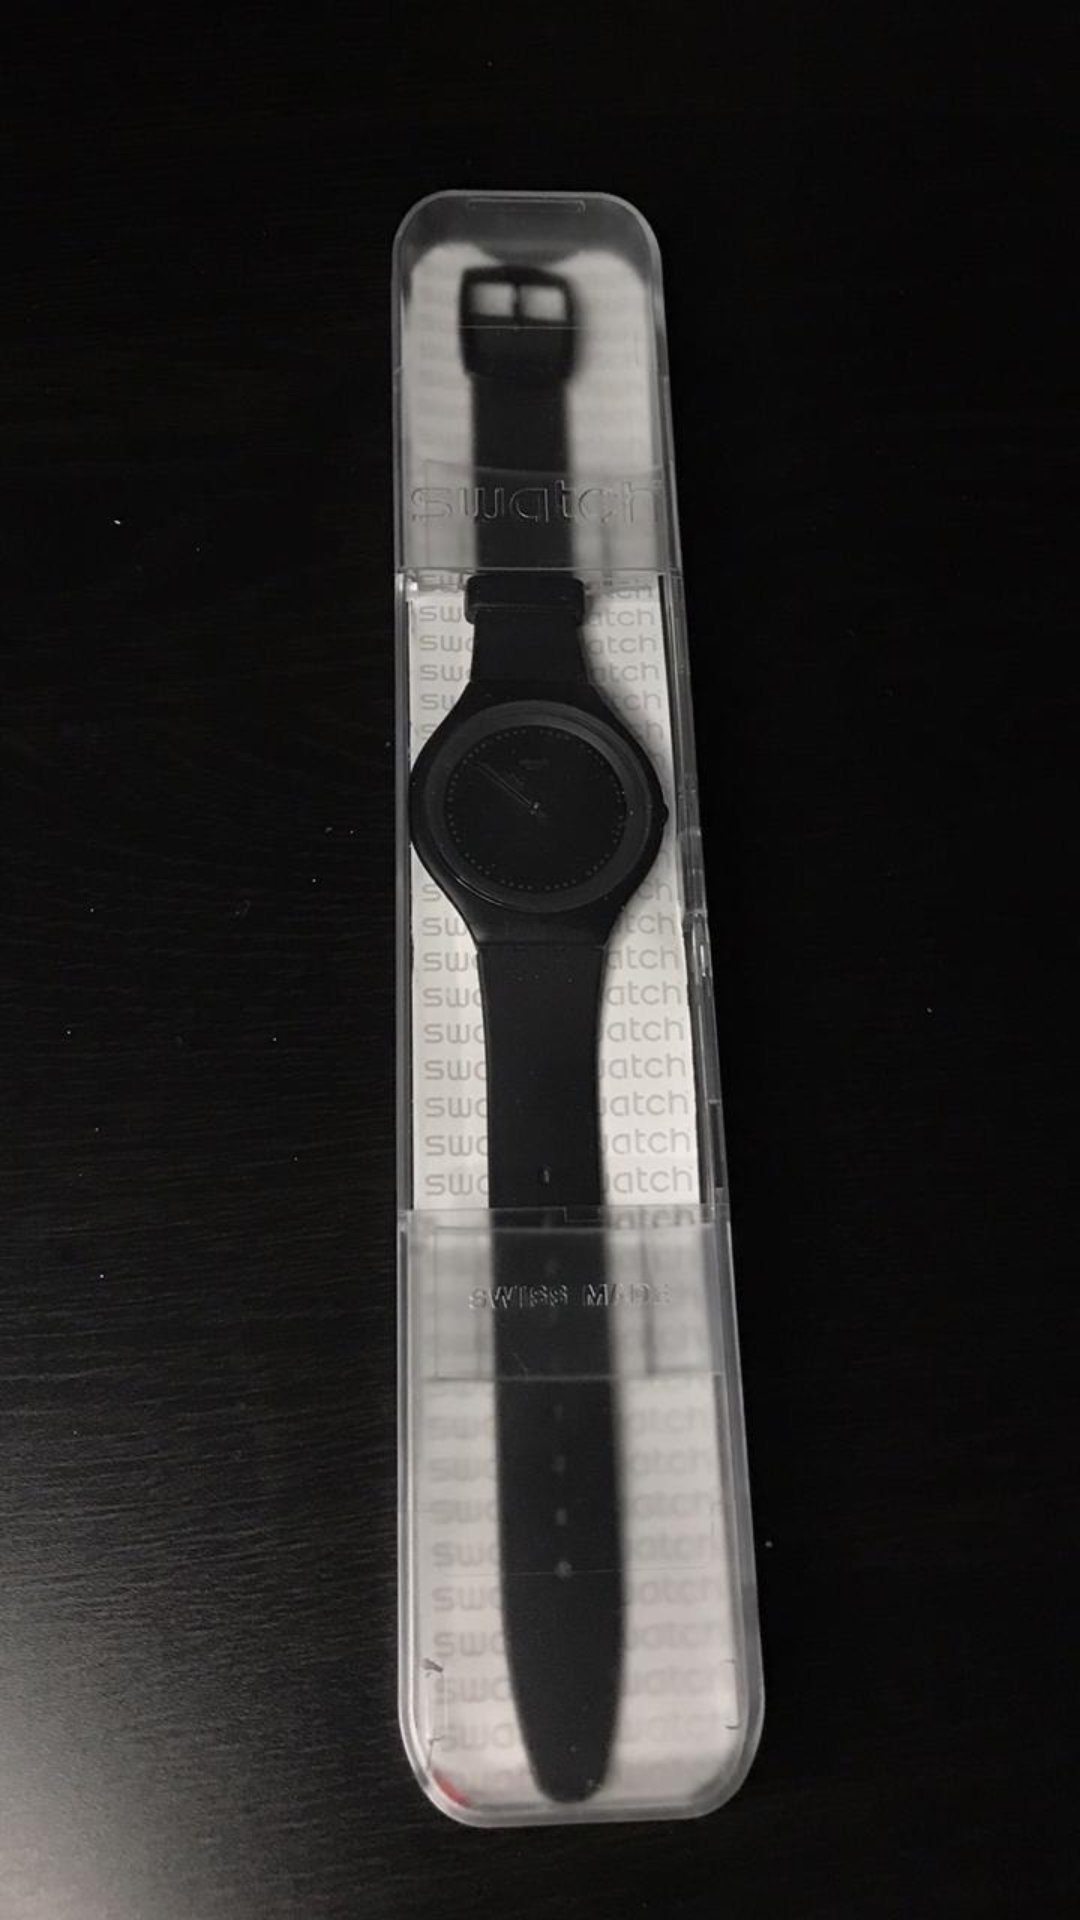 joyas, relojes y accesorios - Reloj Swatch Original con su caja, color negro, 16